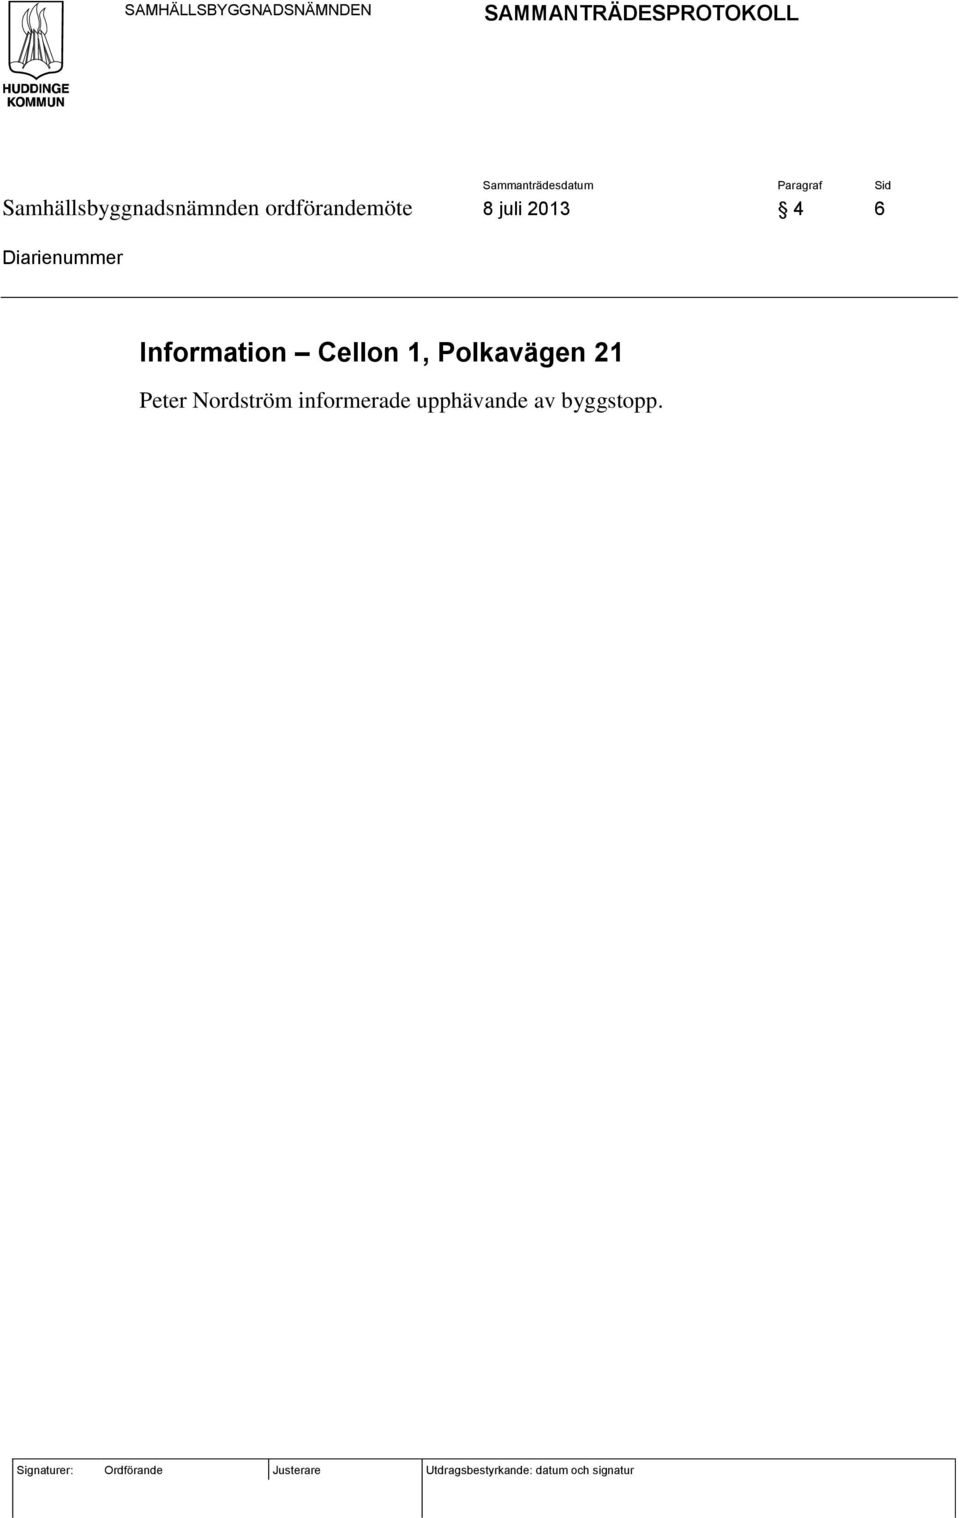 Information Cellon 1, Polkavägen 21